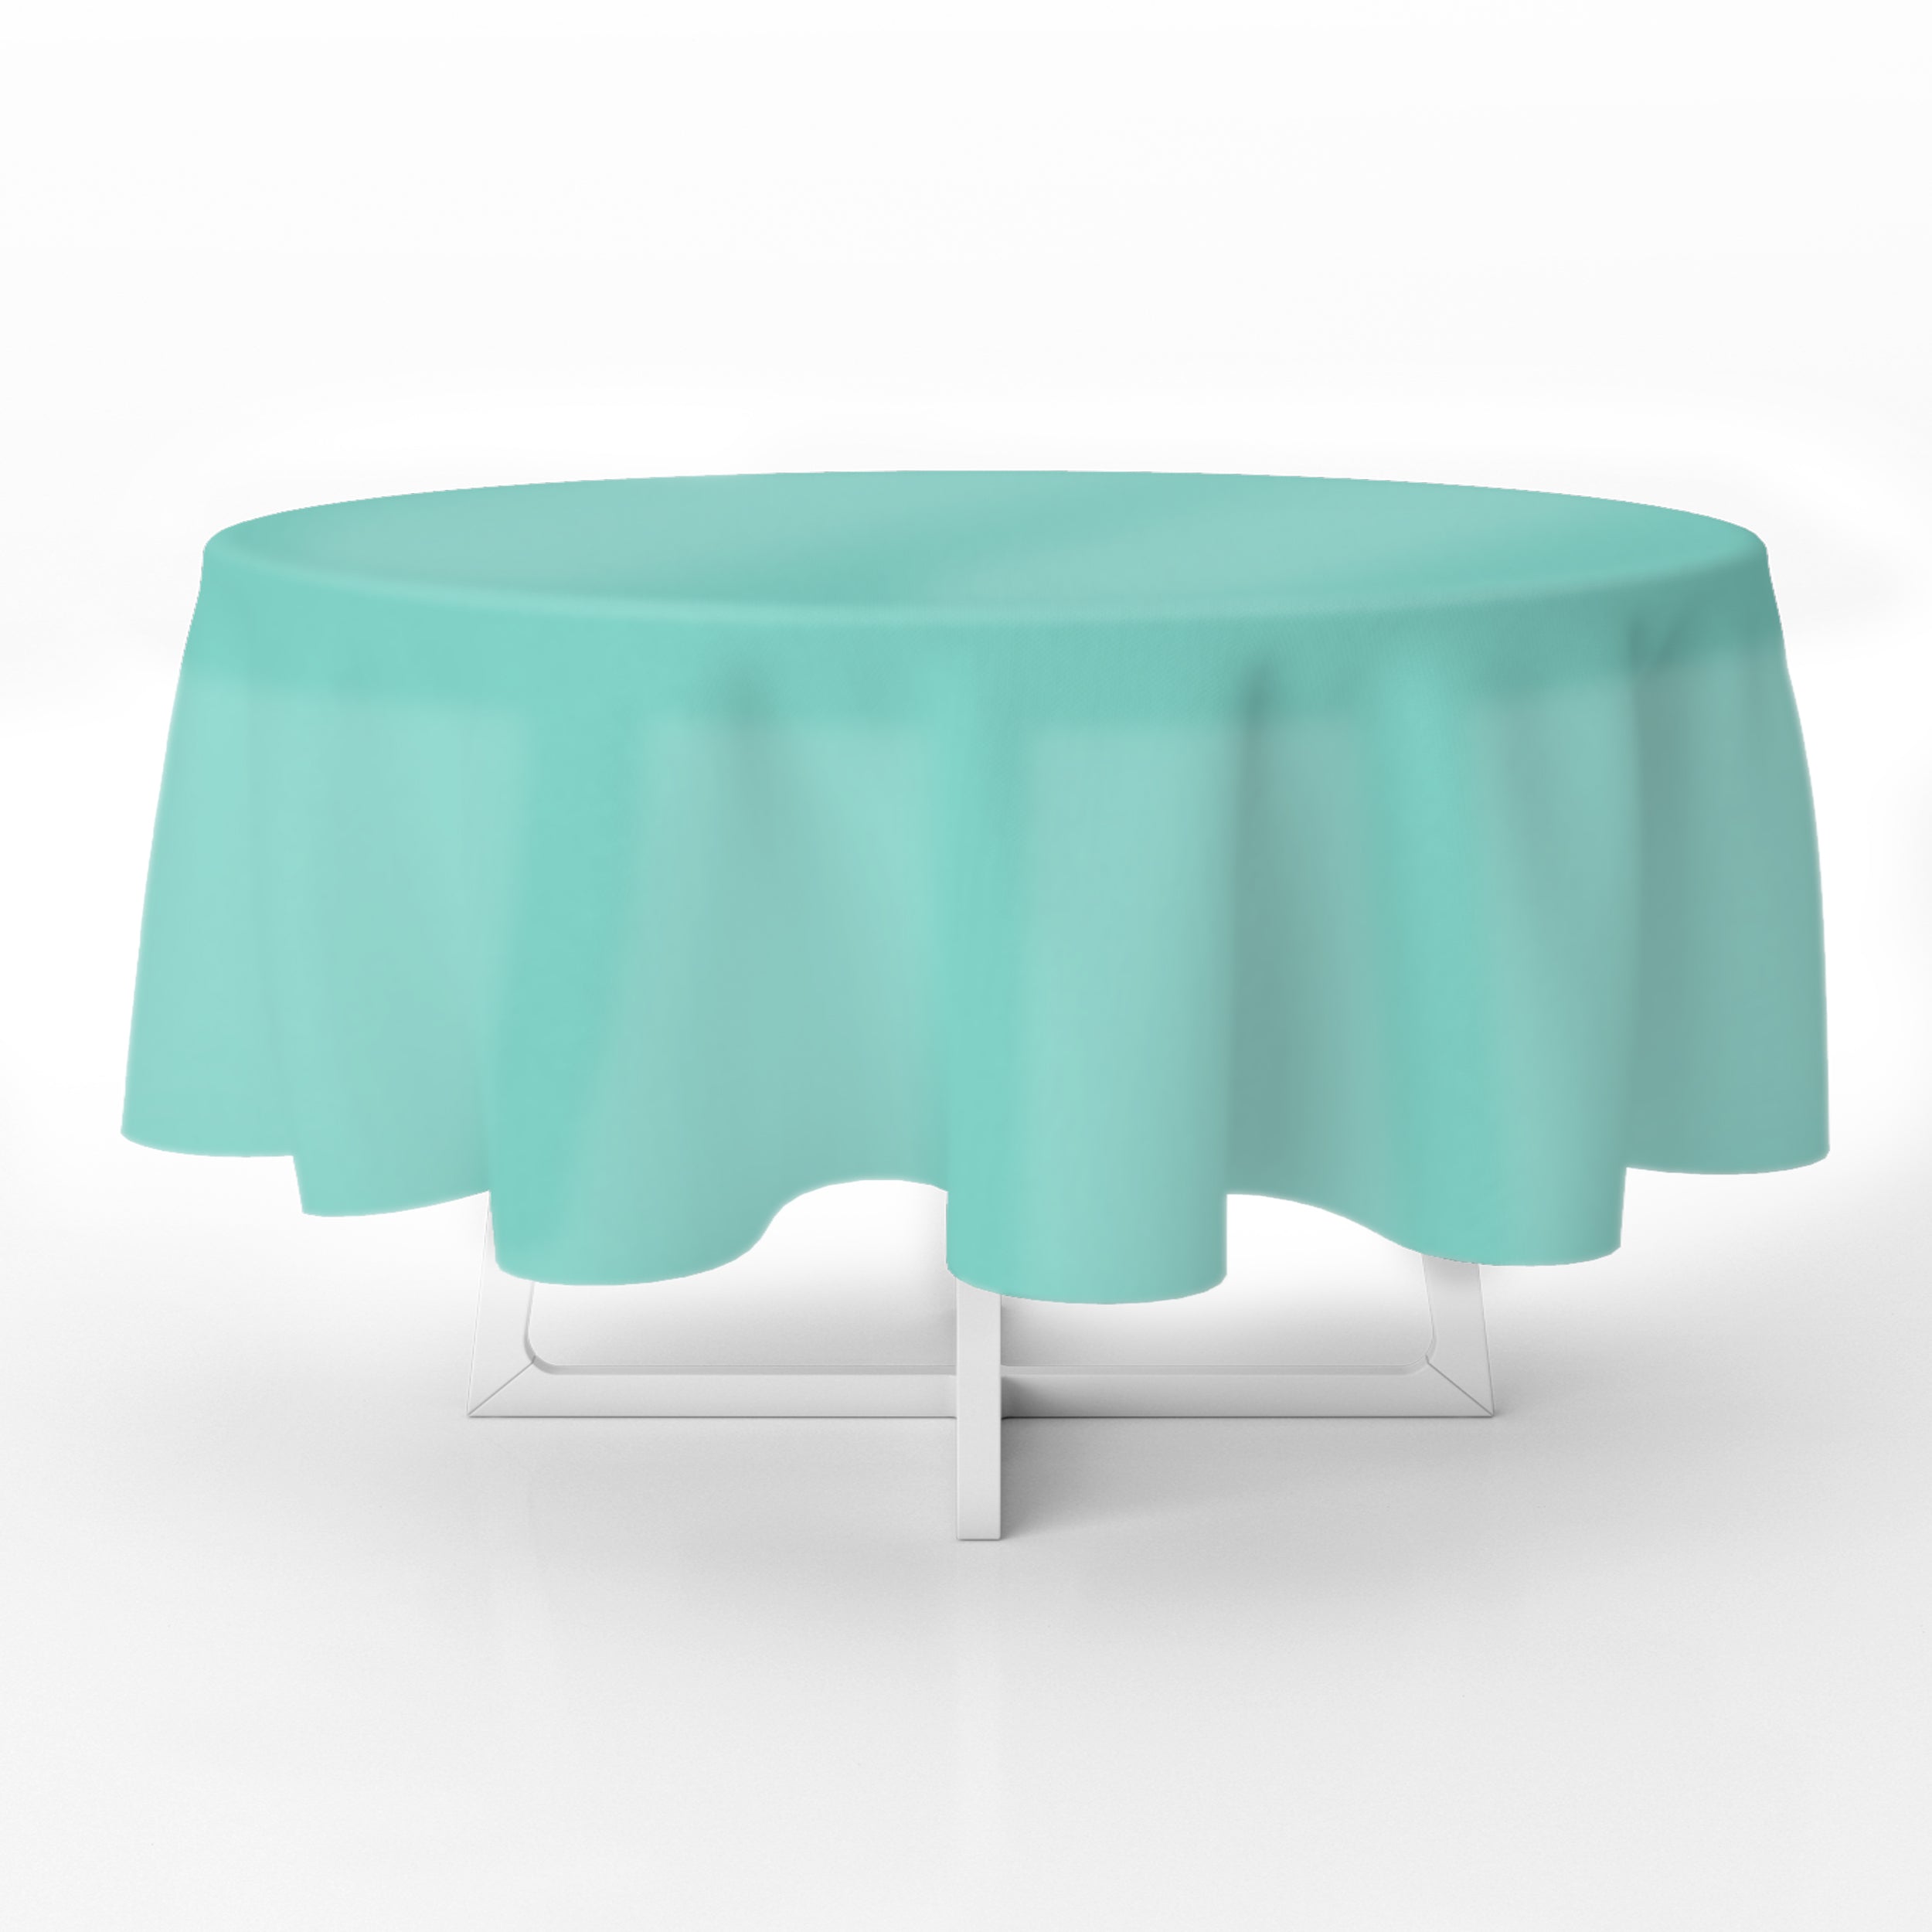 Aqua Premium Round Plastic Table Cover